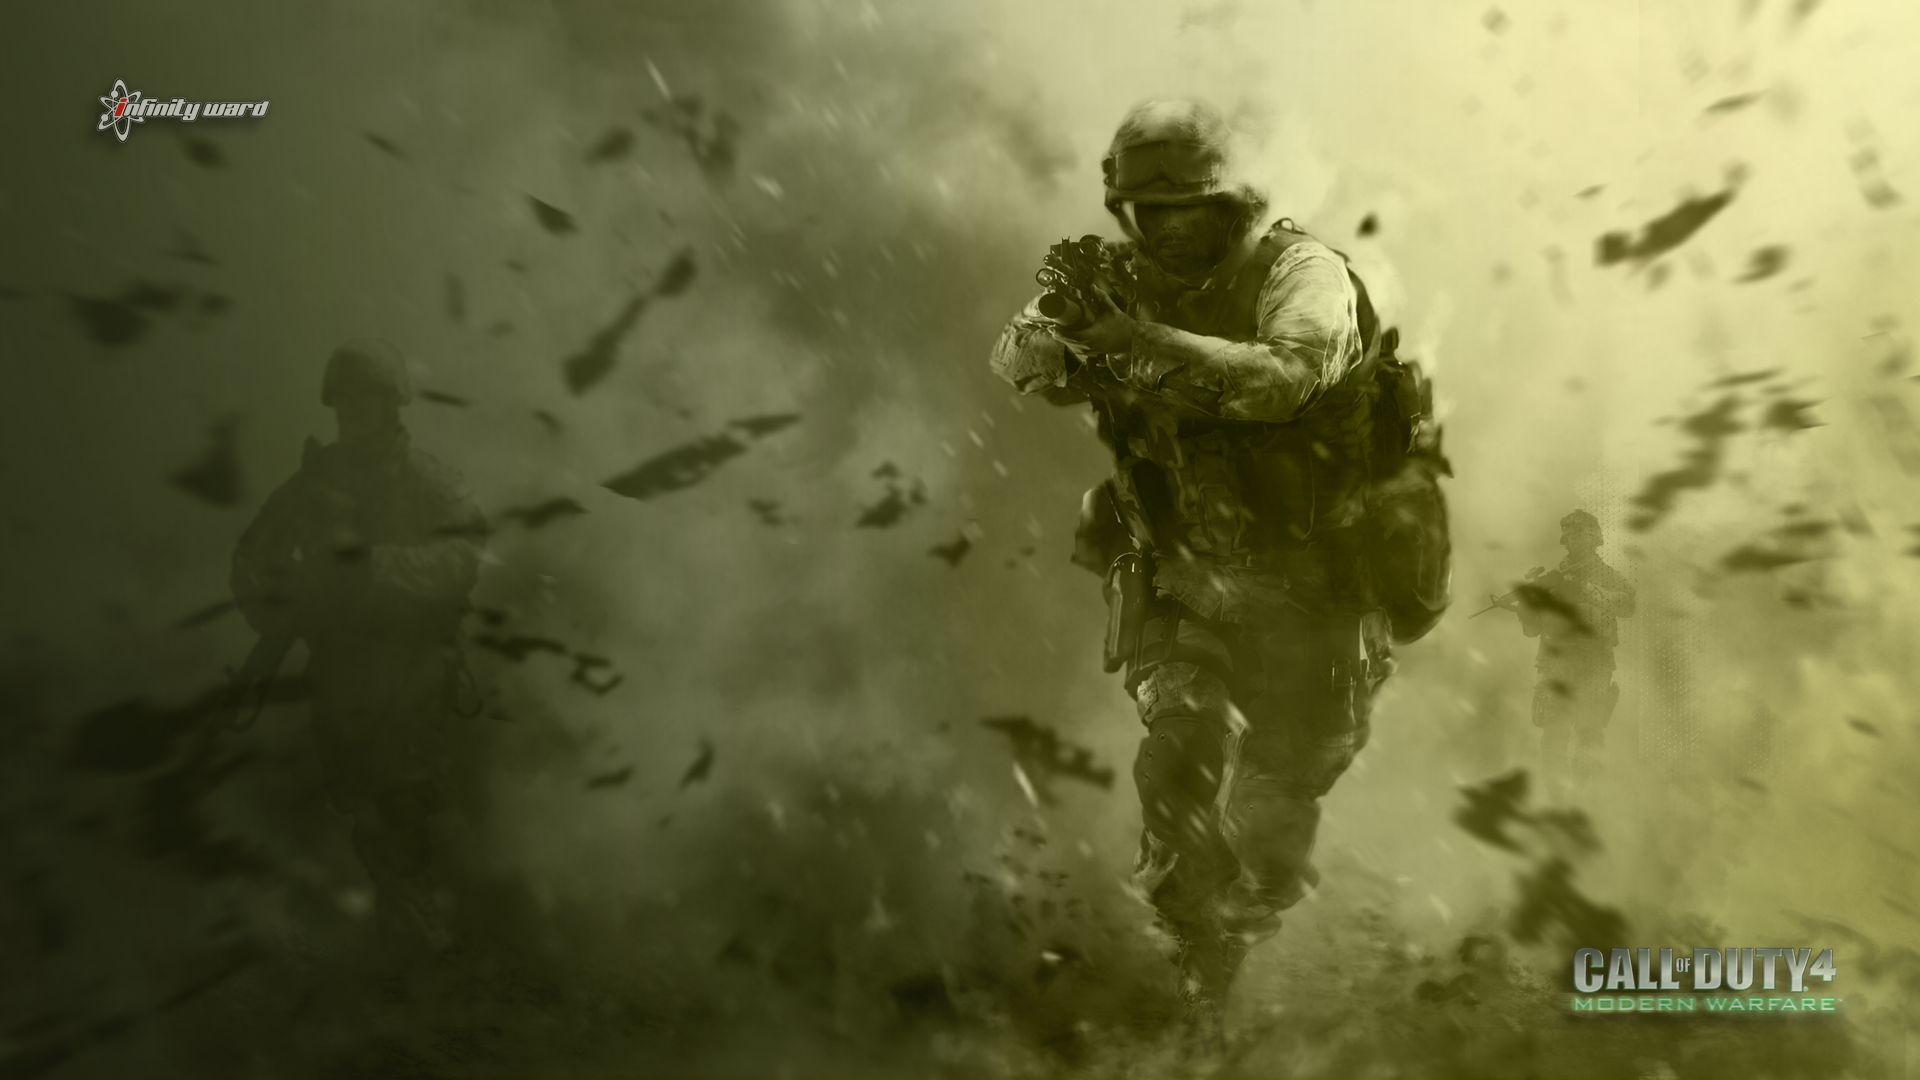 video games, war, Call of Duty - desktop wallpaper